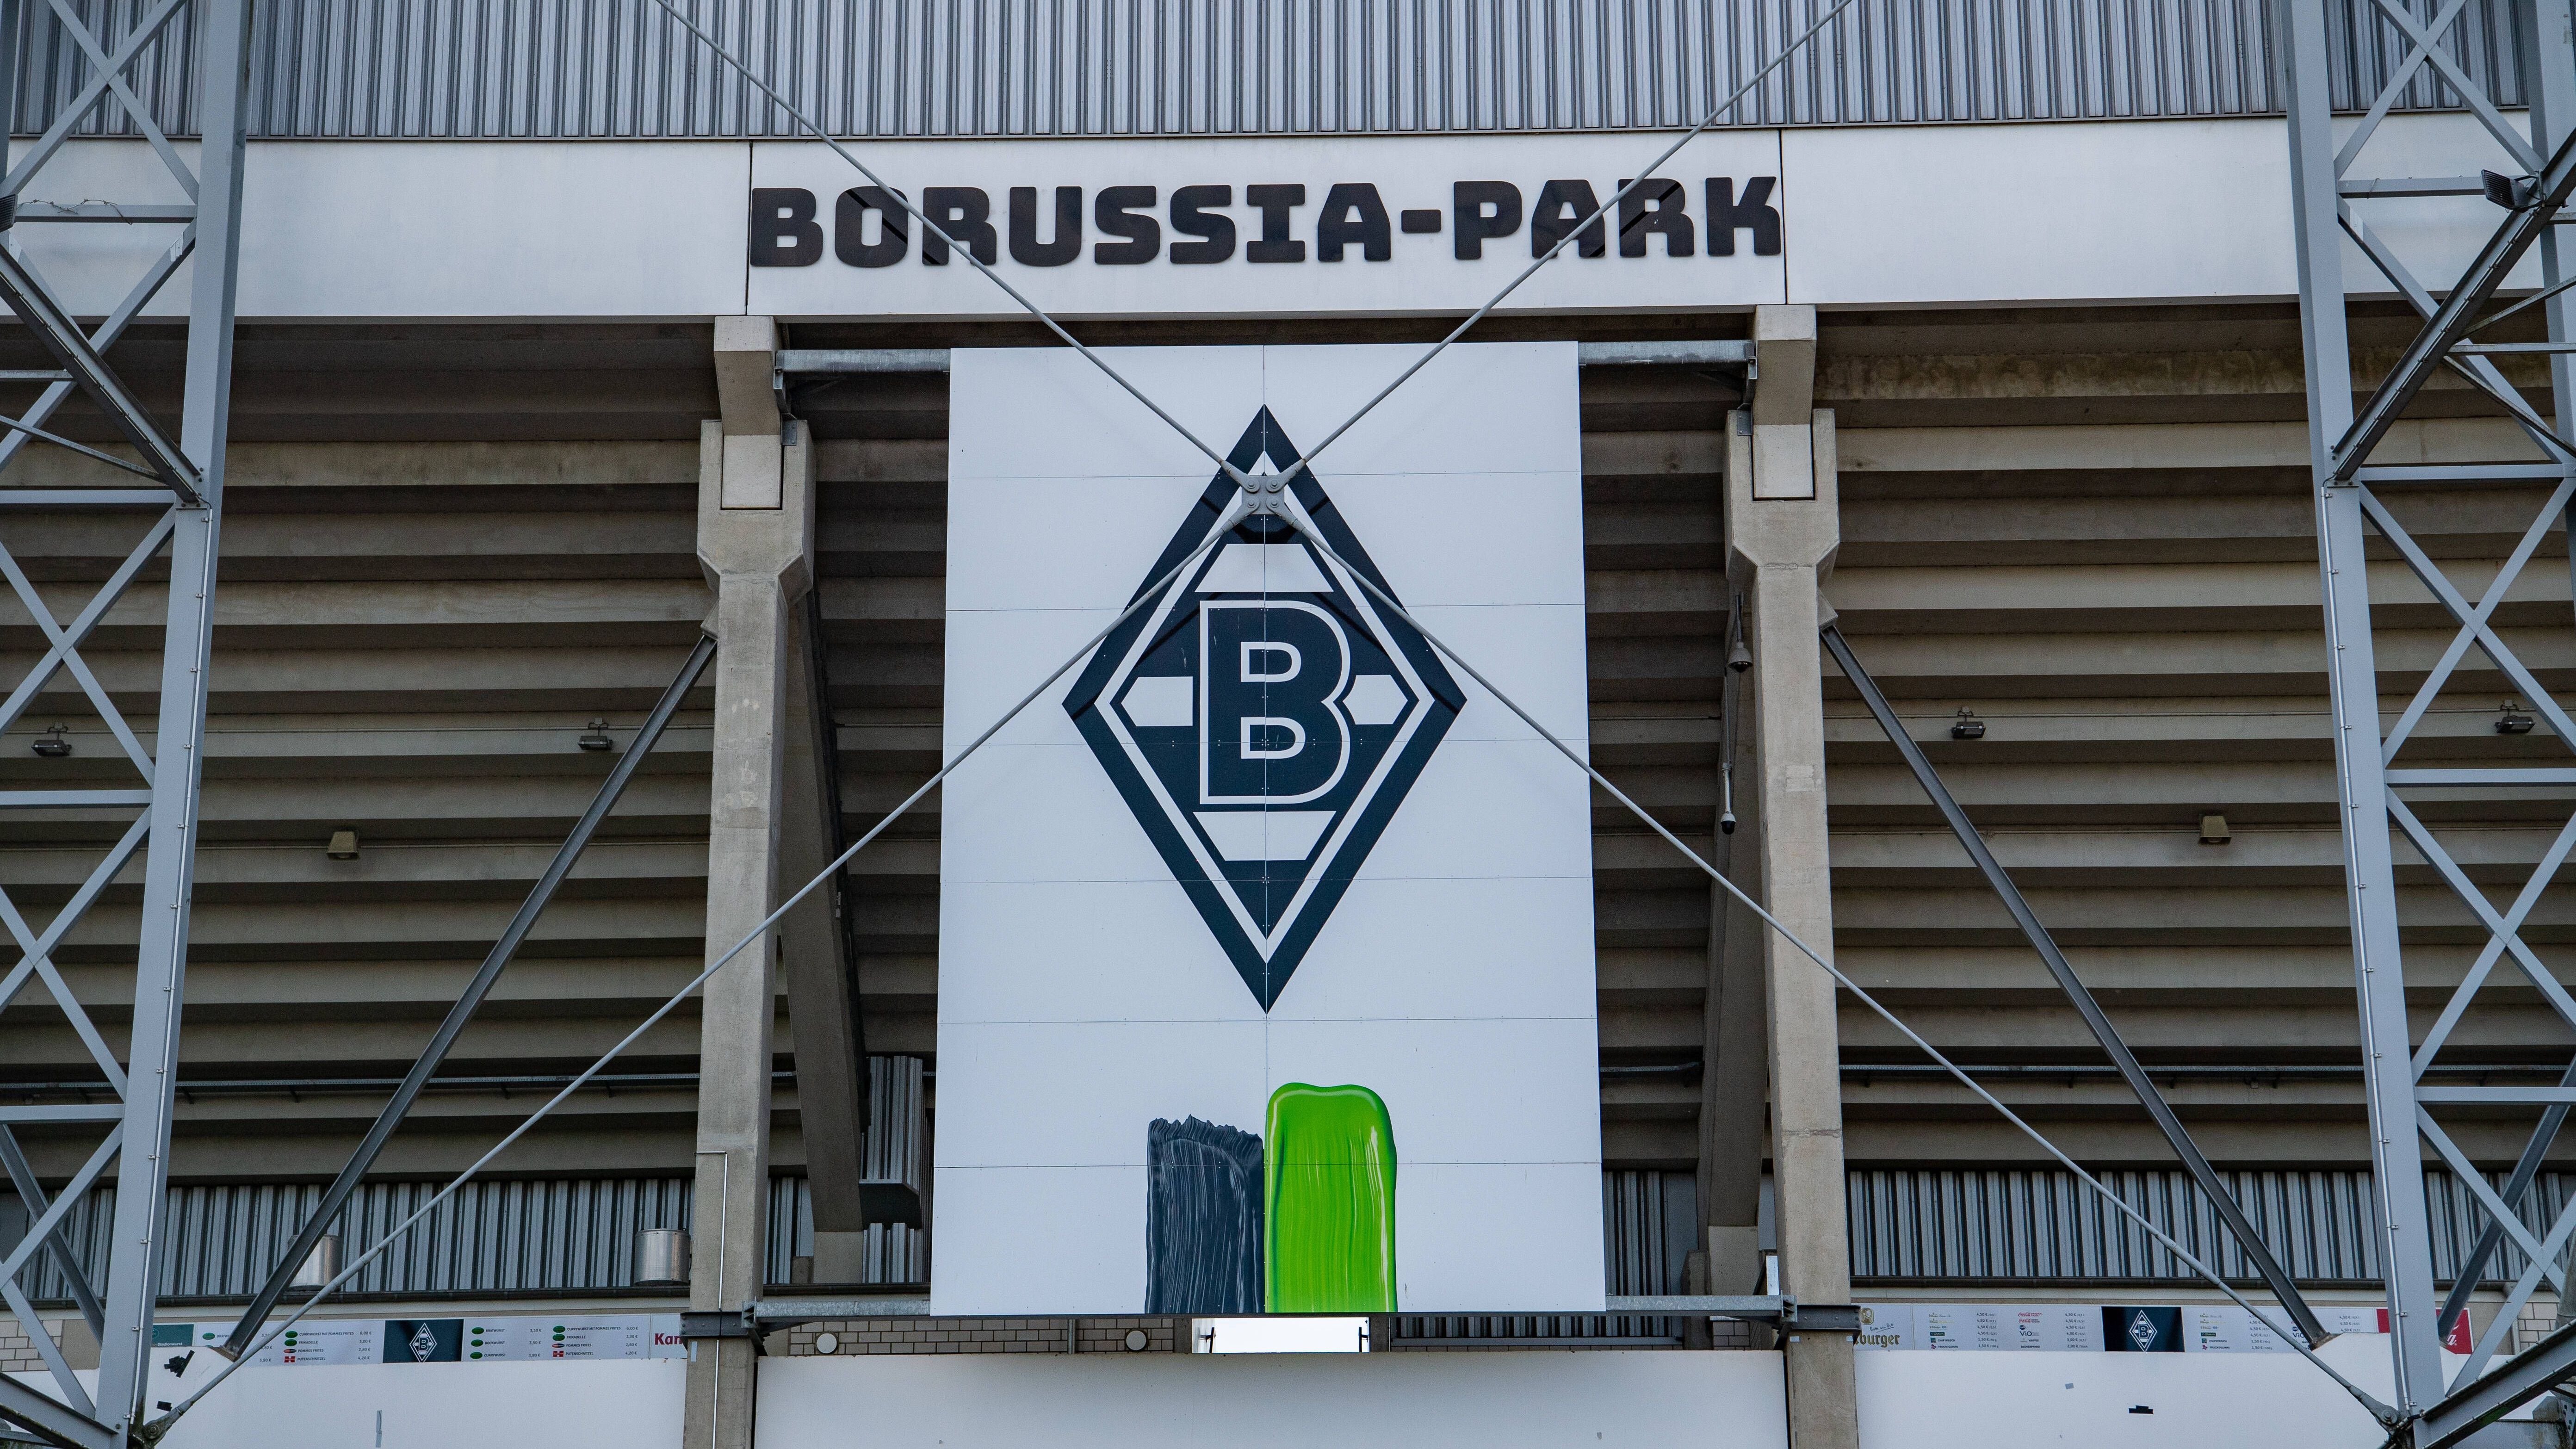 <strong>Platz 8: Borussia Mönchengladbach (1. August 1900)</strong><br>Am 1. August 1900&nbsp; wurde Borussia Mönchengladbach als "Borussia 1900" gegründet. Knapp zehn Jahre später, am 23. März 1910, erfolgte die offizielle Eintragung ins Vereinsregister als "Borussia VfL 1900 M.Gladbach".<br><br><strong>Saisons in der Bundesliga: 55</strong>